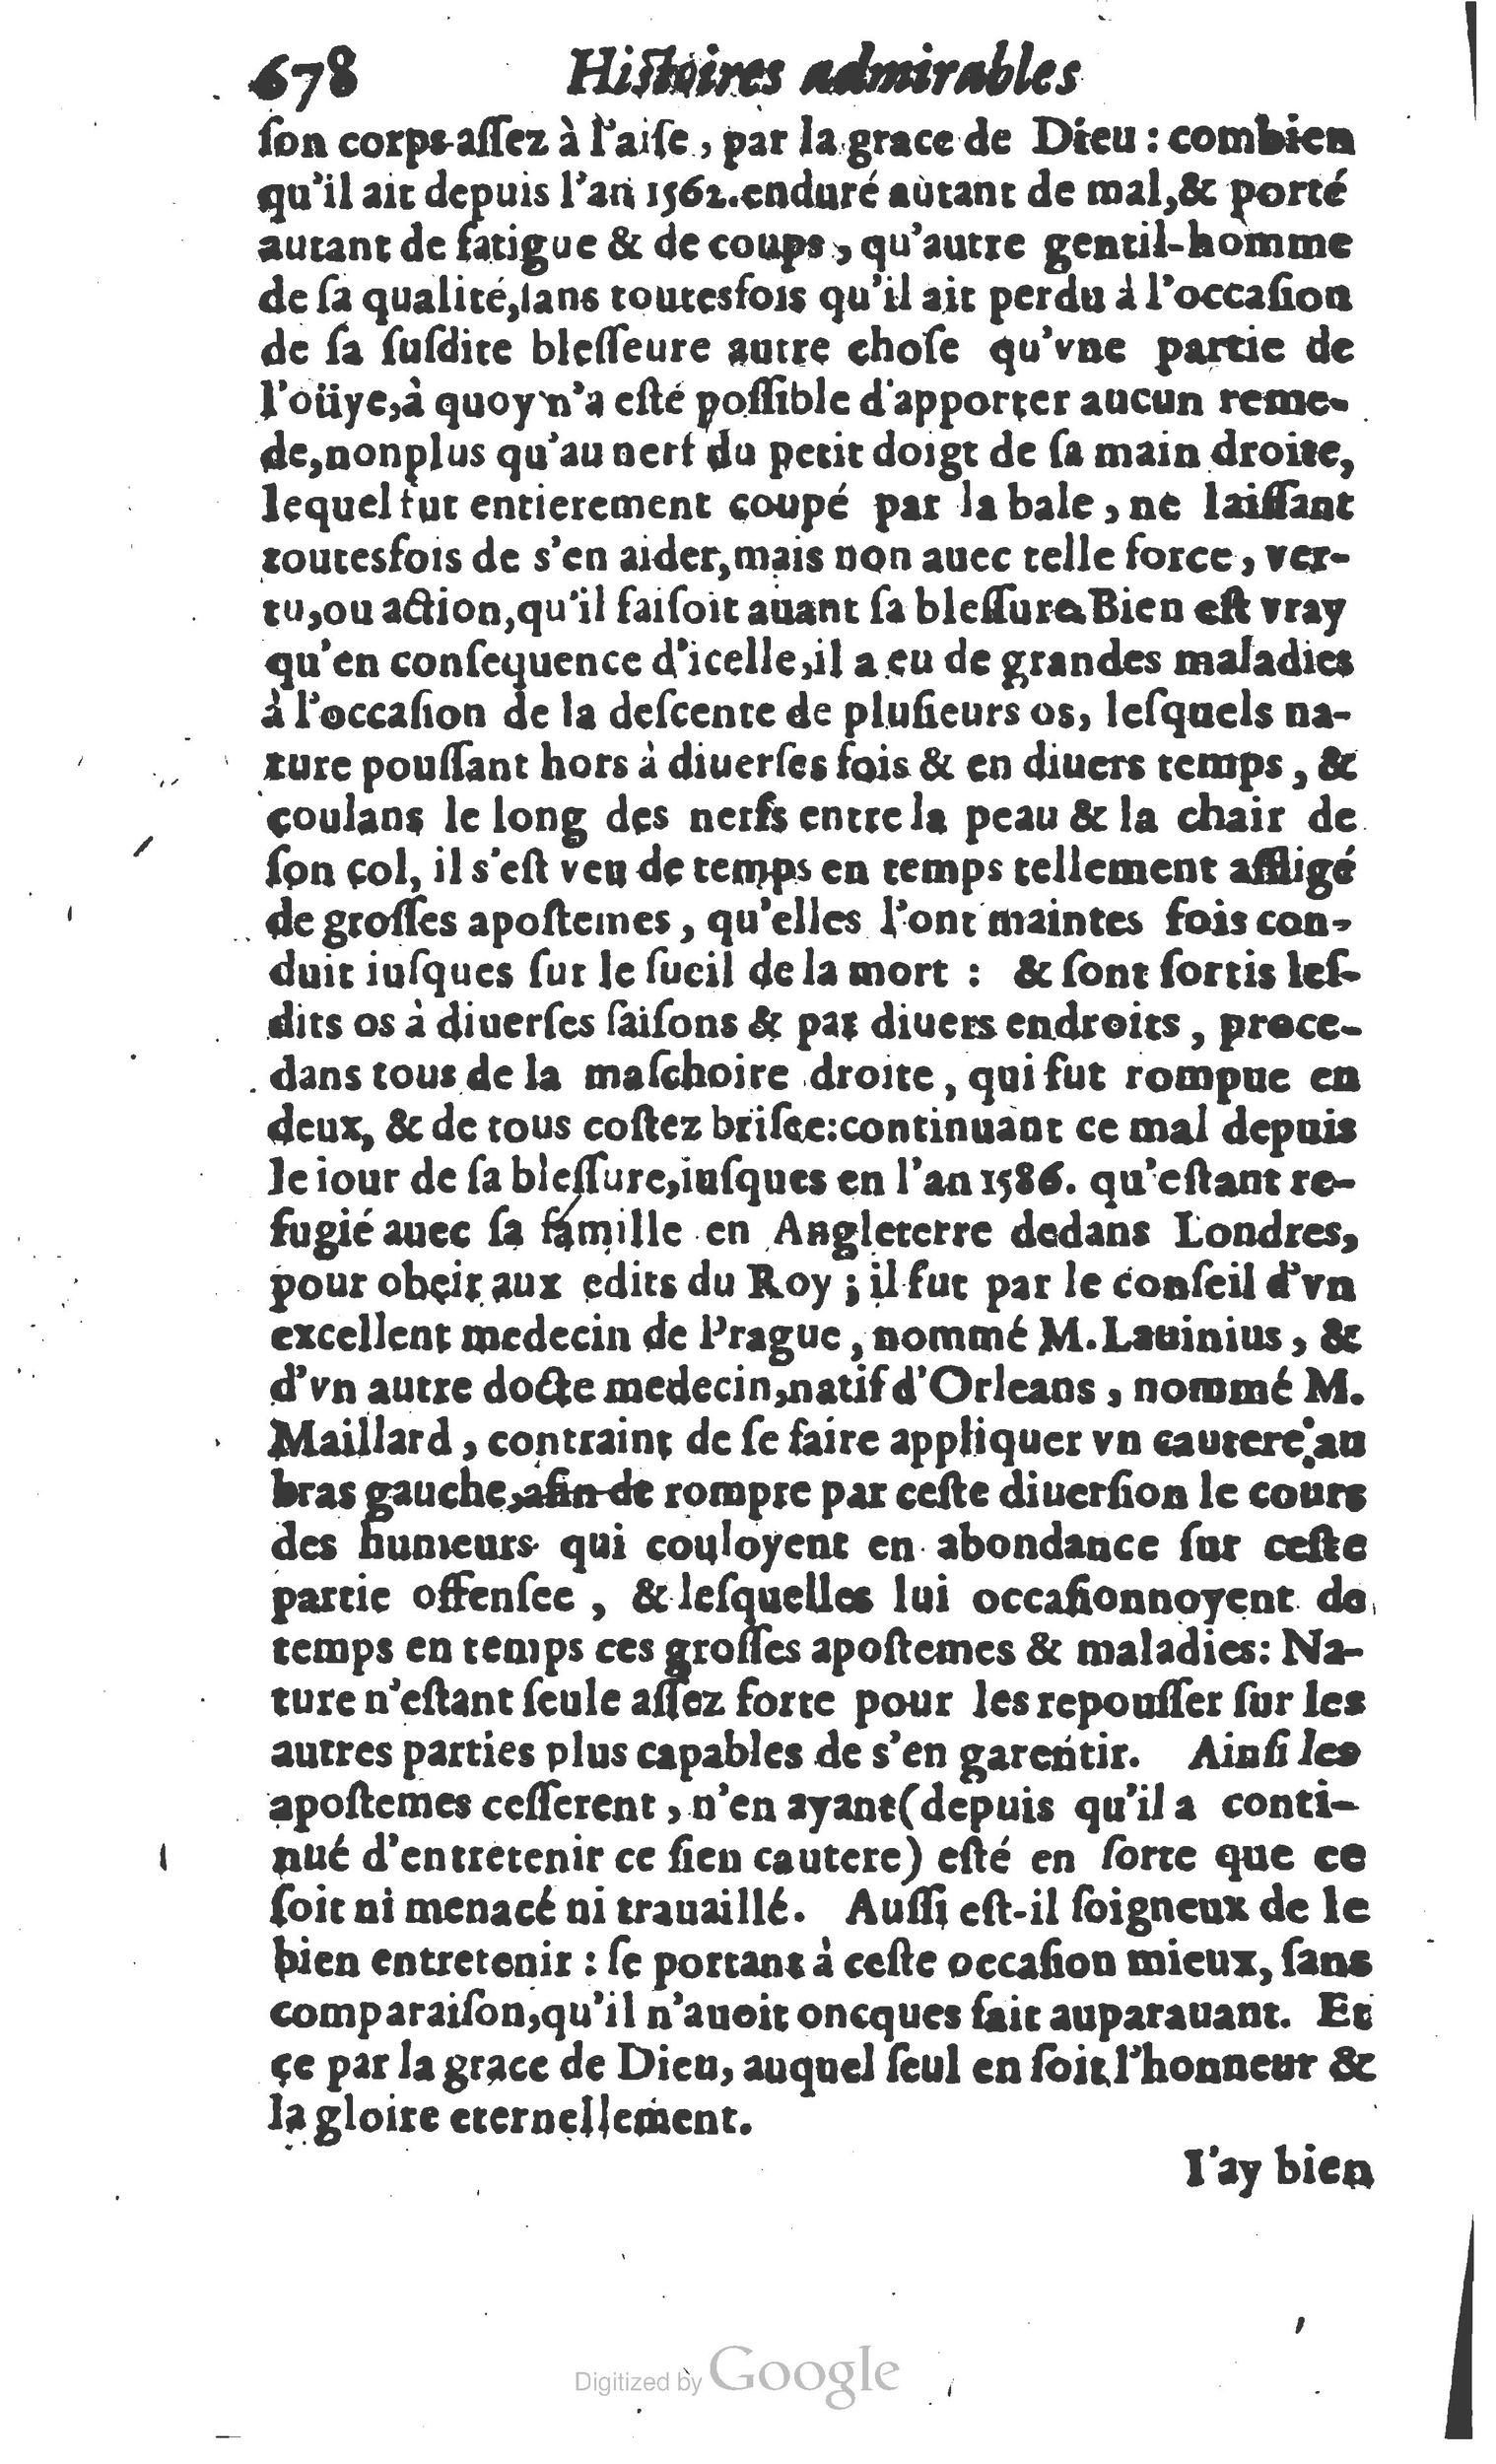 1610 Trésor d’histoires admirables et mémorables de nostre temps Marceau Princeton_Page_0699.jpg